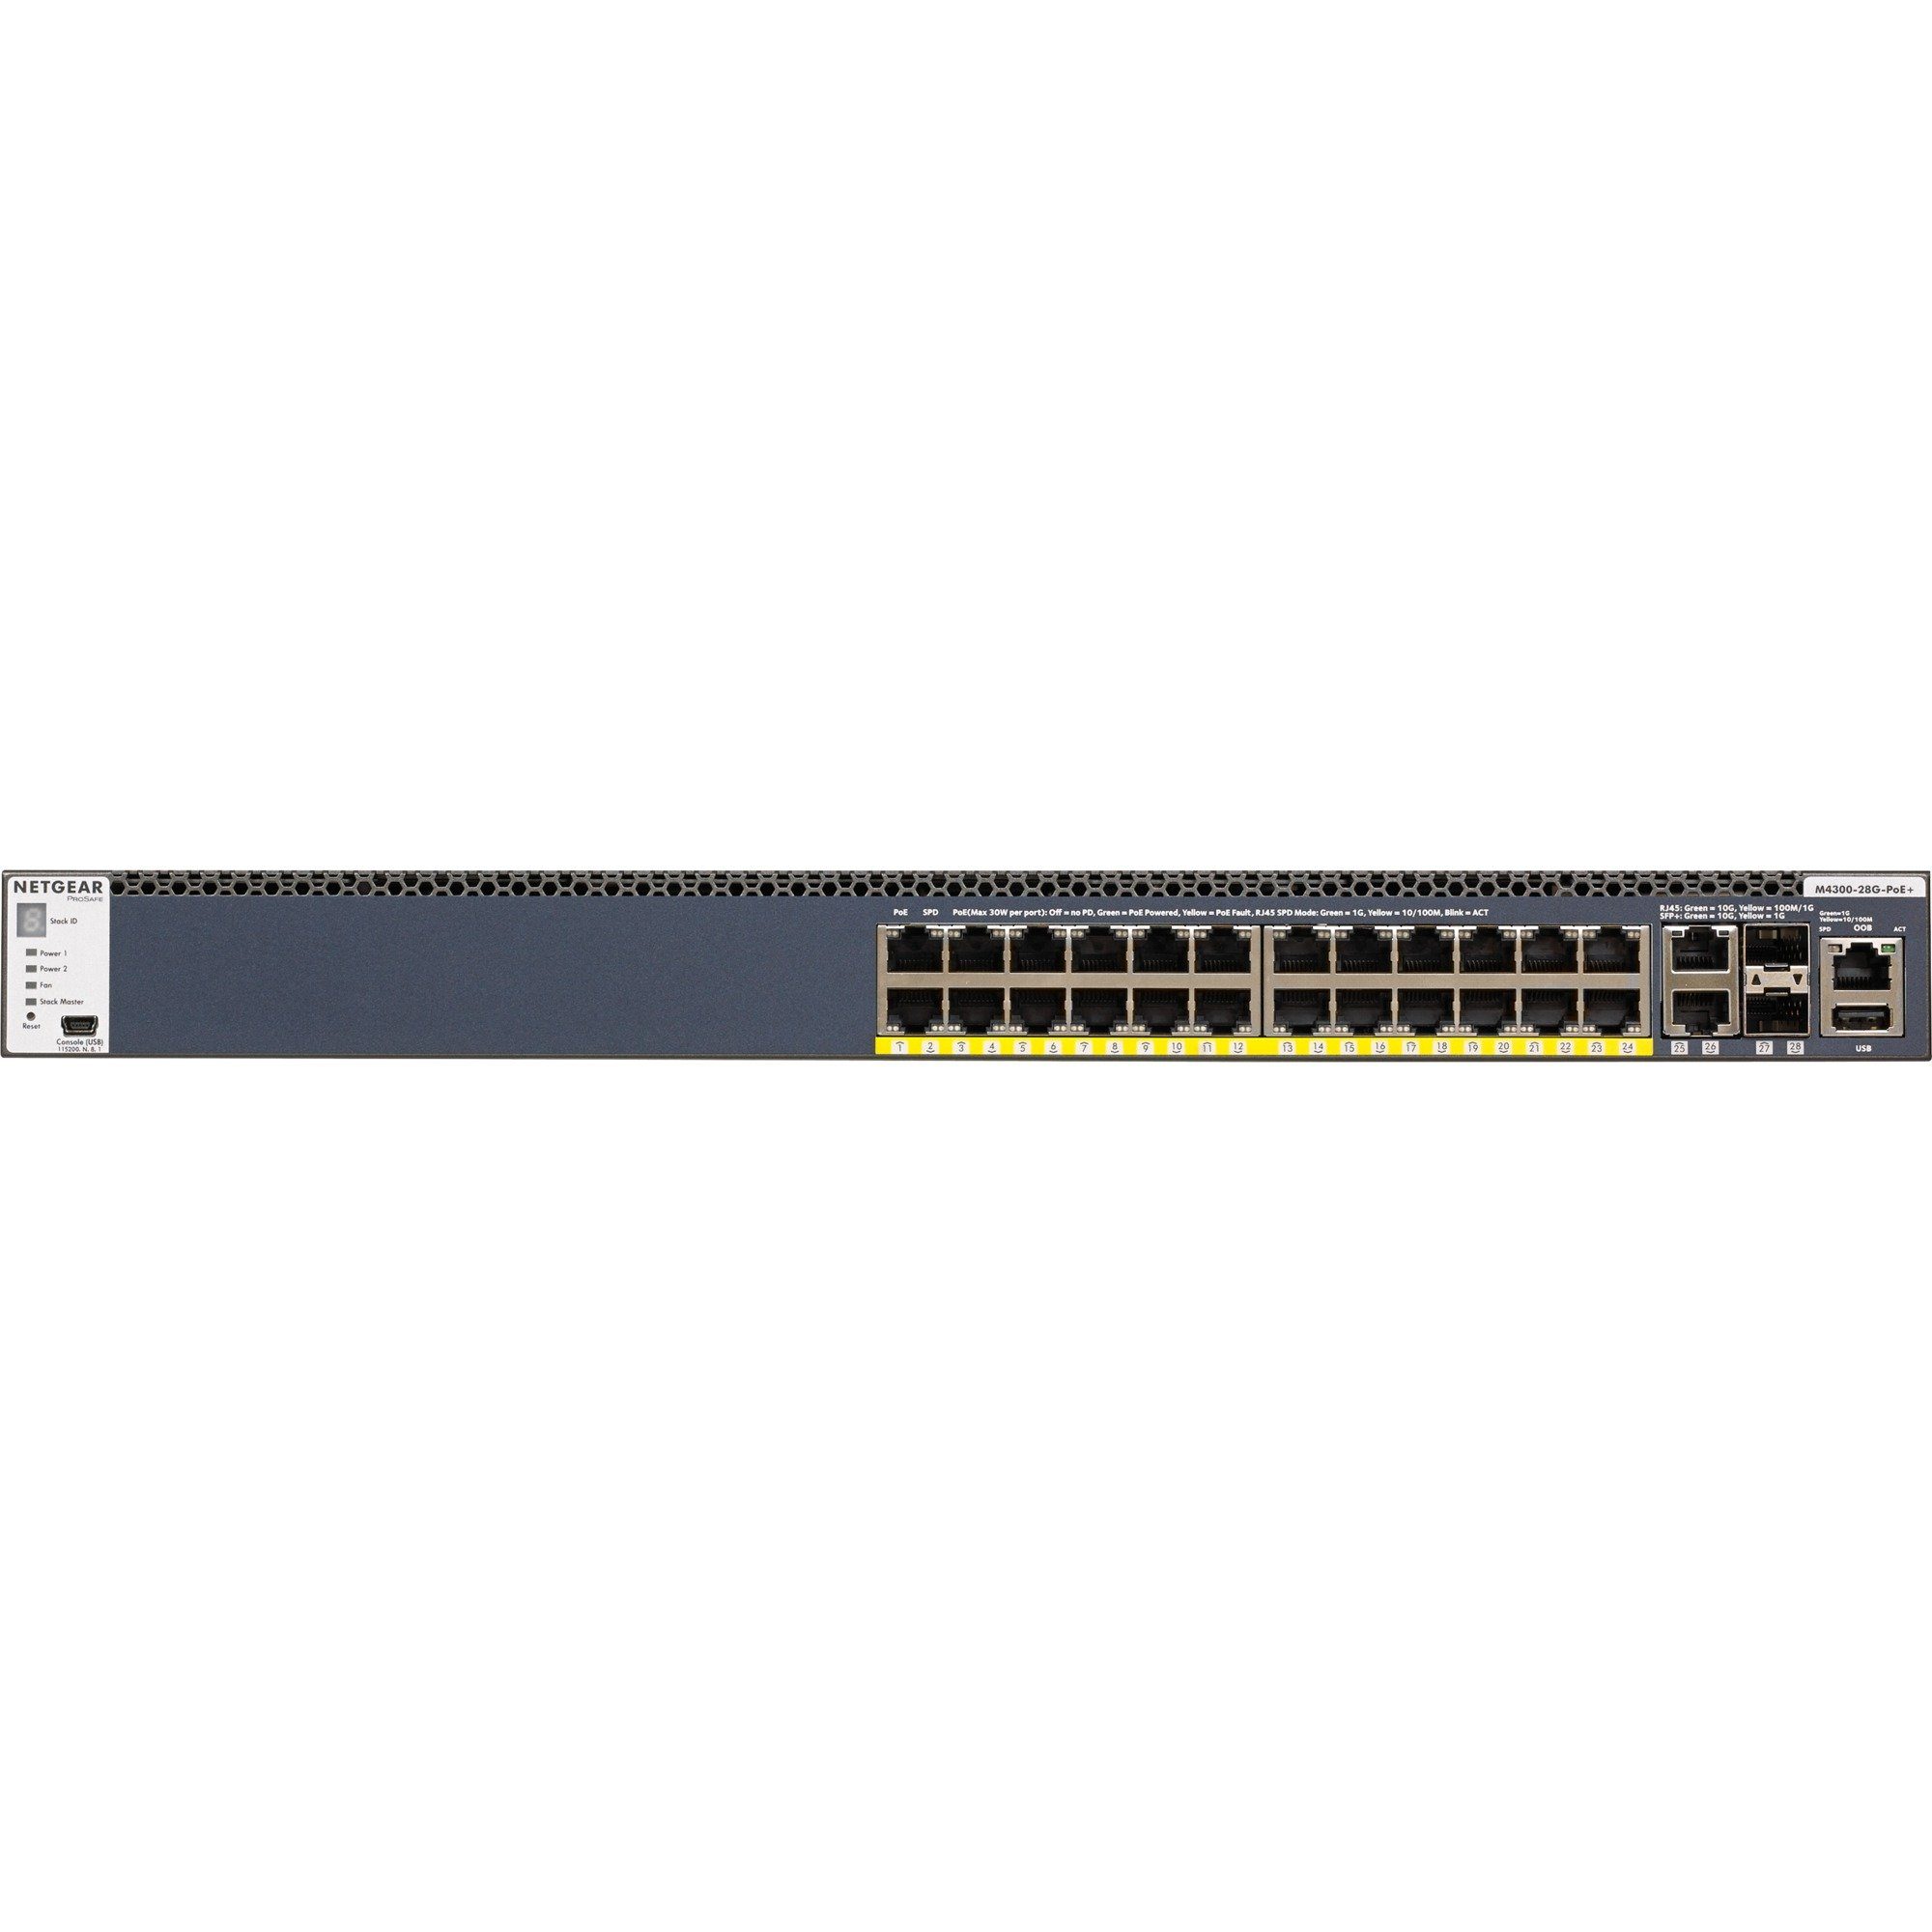 Netzwerk-Switch M4300-28G-PoE+, Netgear NETGEAR Switch